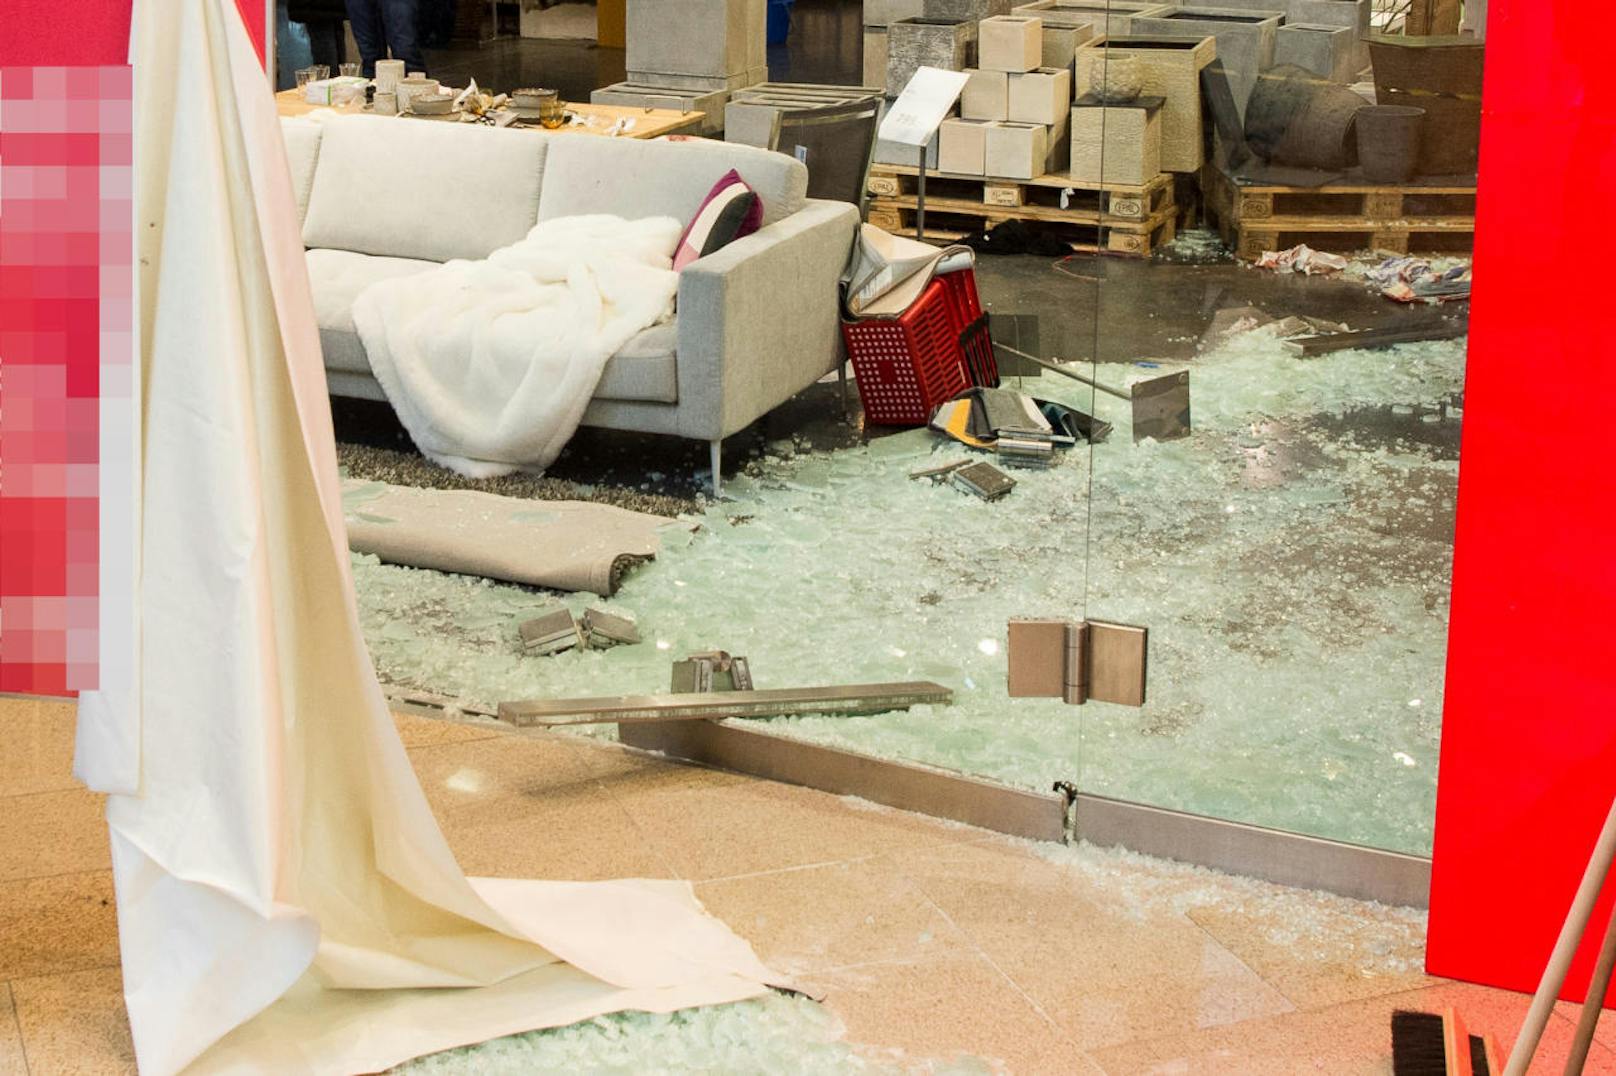 In der Plus City stürzten drei rund 500 Kilogramm schwere Glaselemente auf die Verkäuferin.